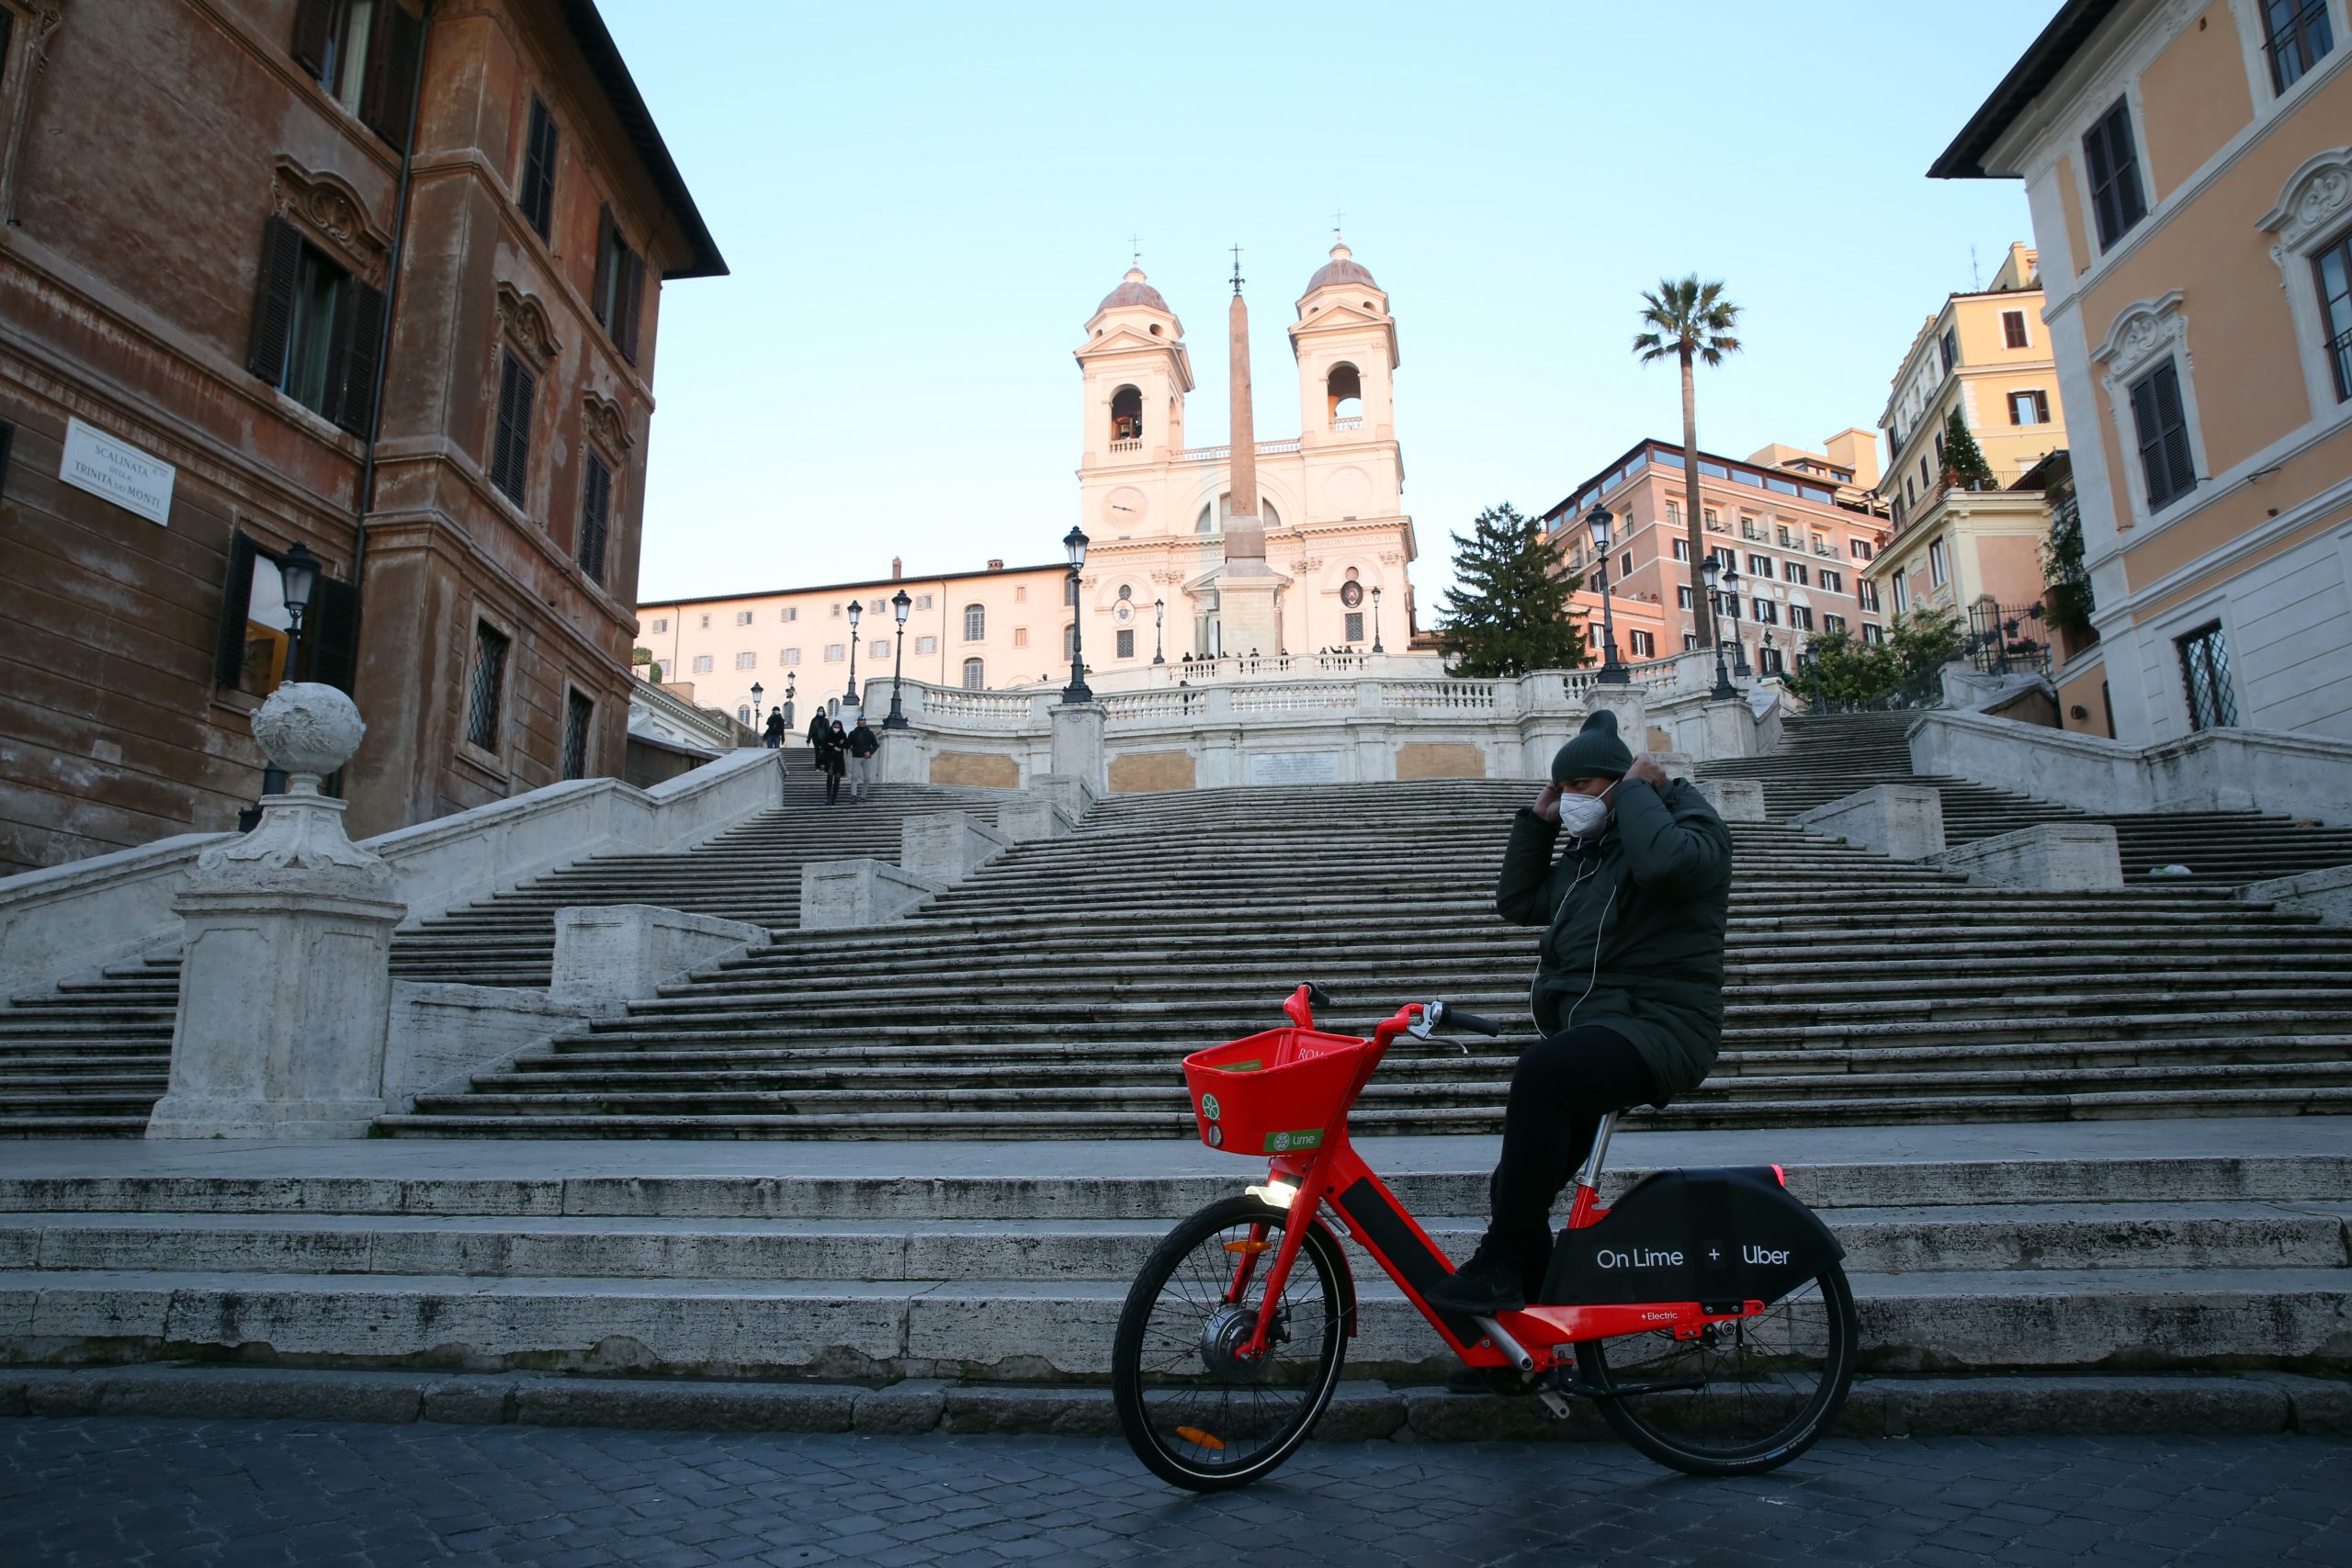 Rzym podczas pandemii, Włochy, Fot. Marco Iacobucci Epp / Shutterstock.com